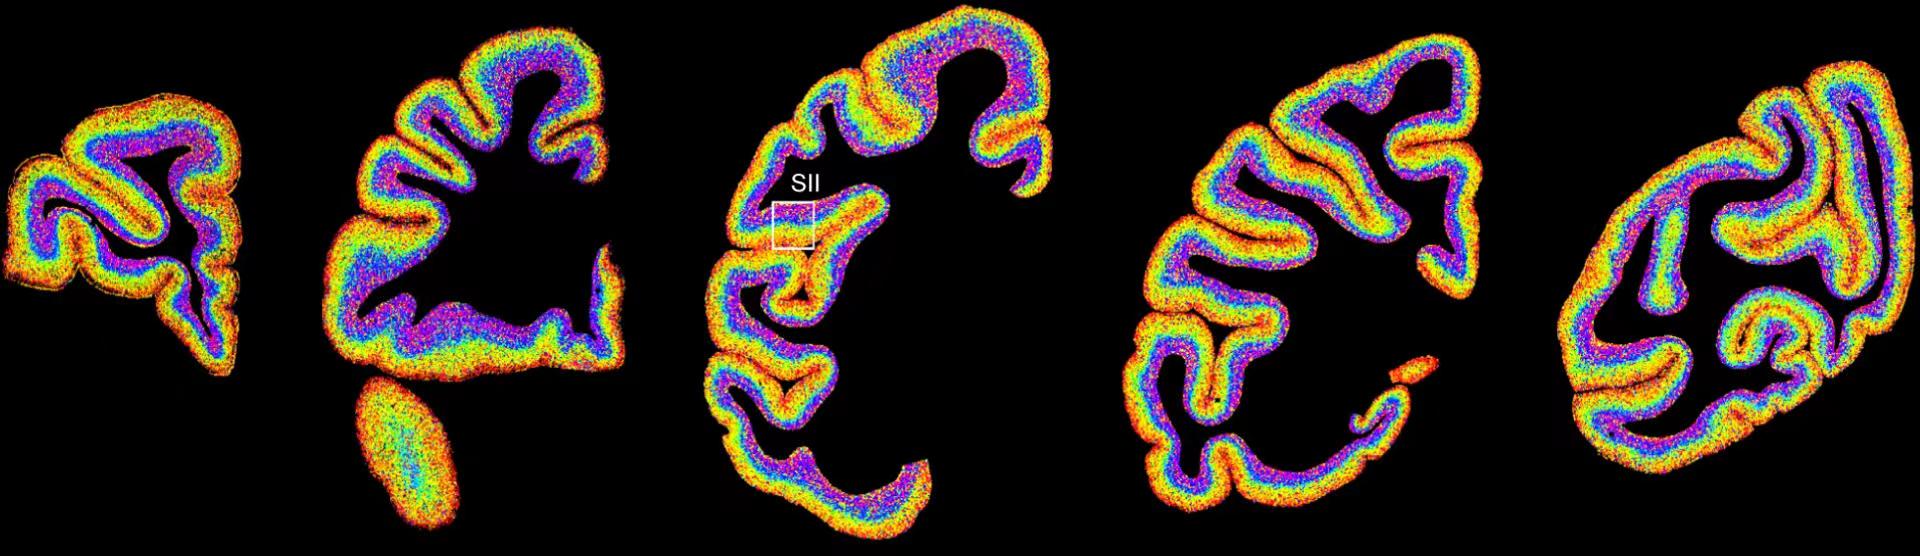 世界首套单细胞分辨率的猕猴大脑皮层细胞空间分布图谱发布